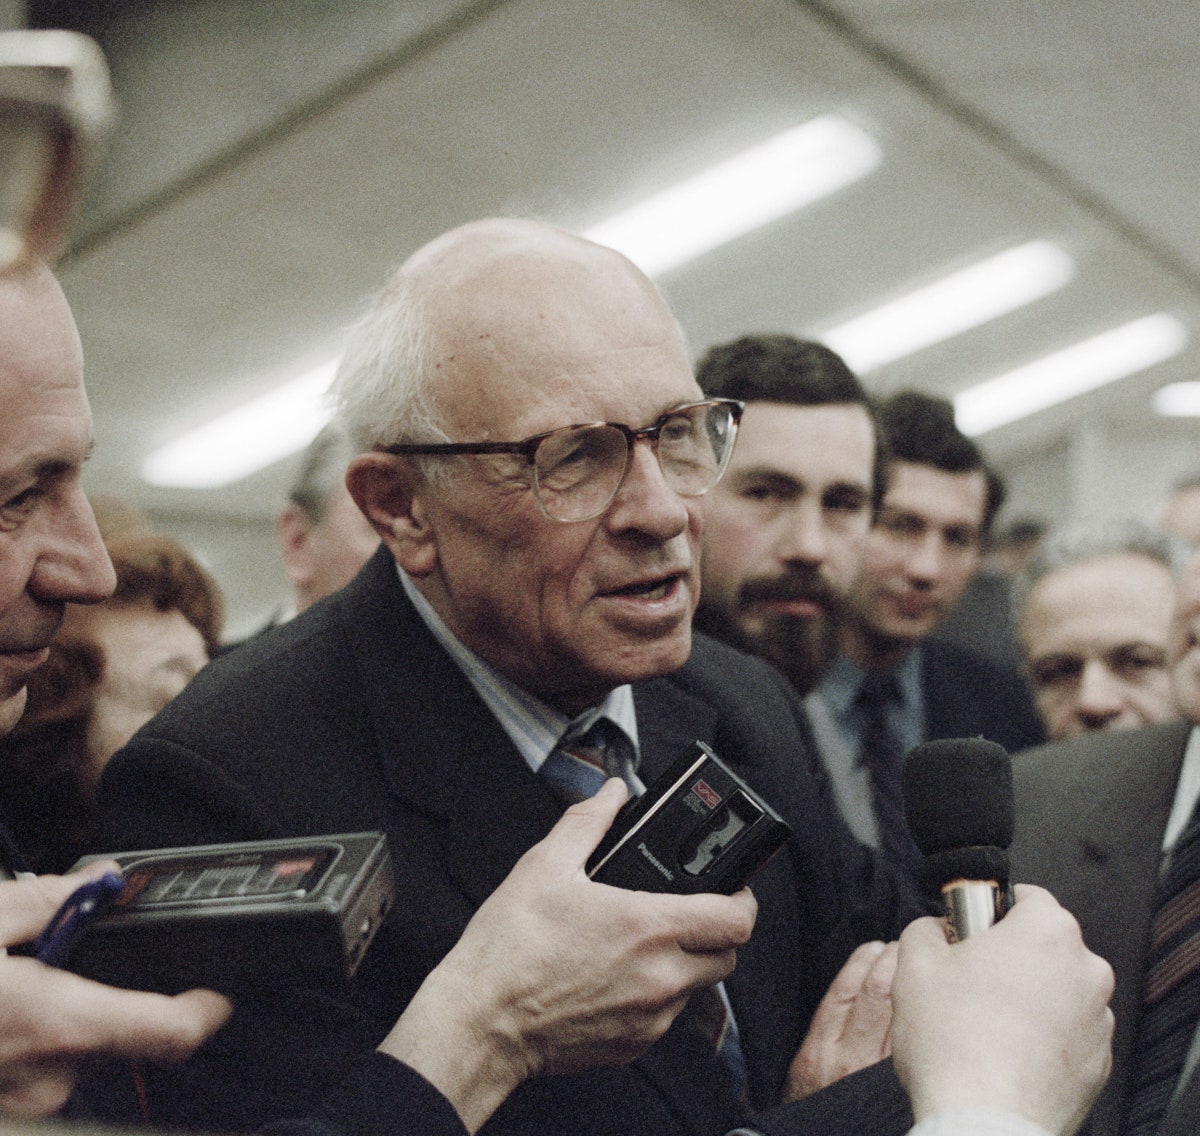 Андрей Сахаров дает интервью на конференции АН СССР март 1989 года